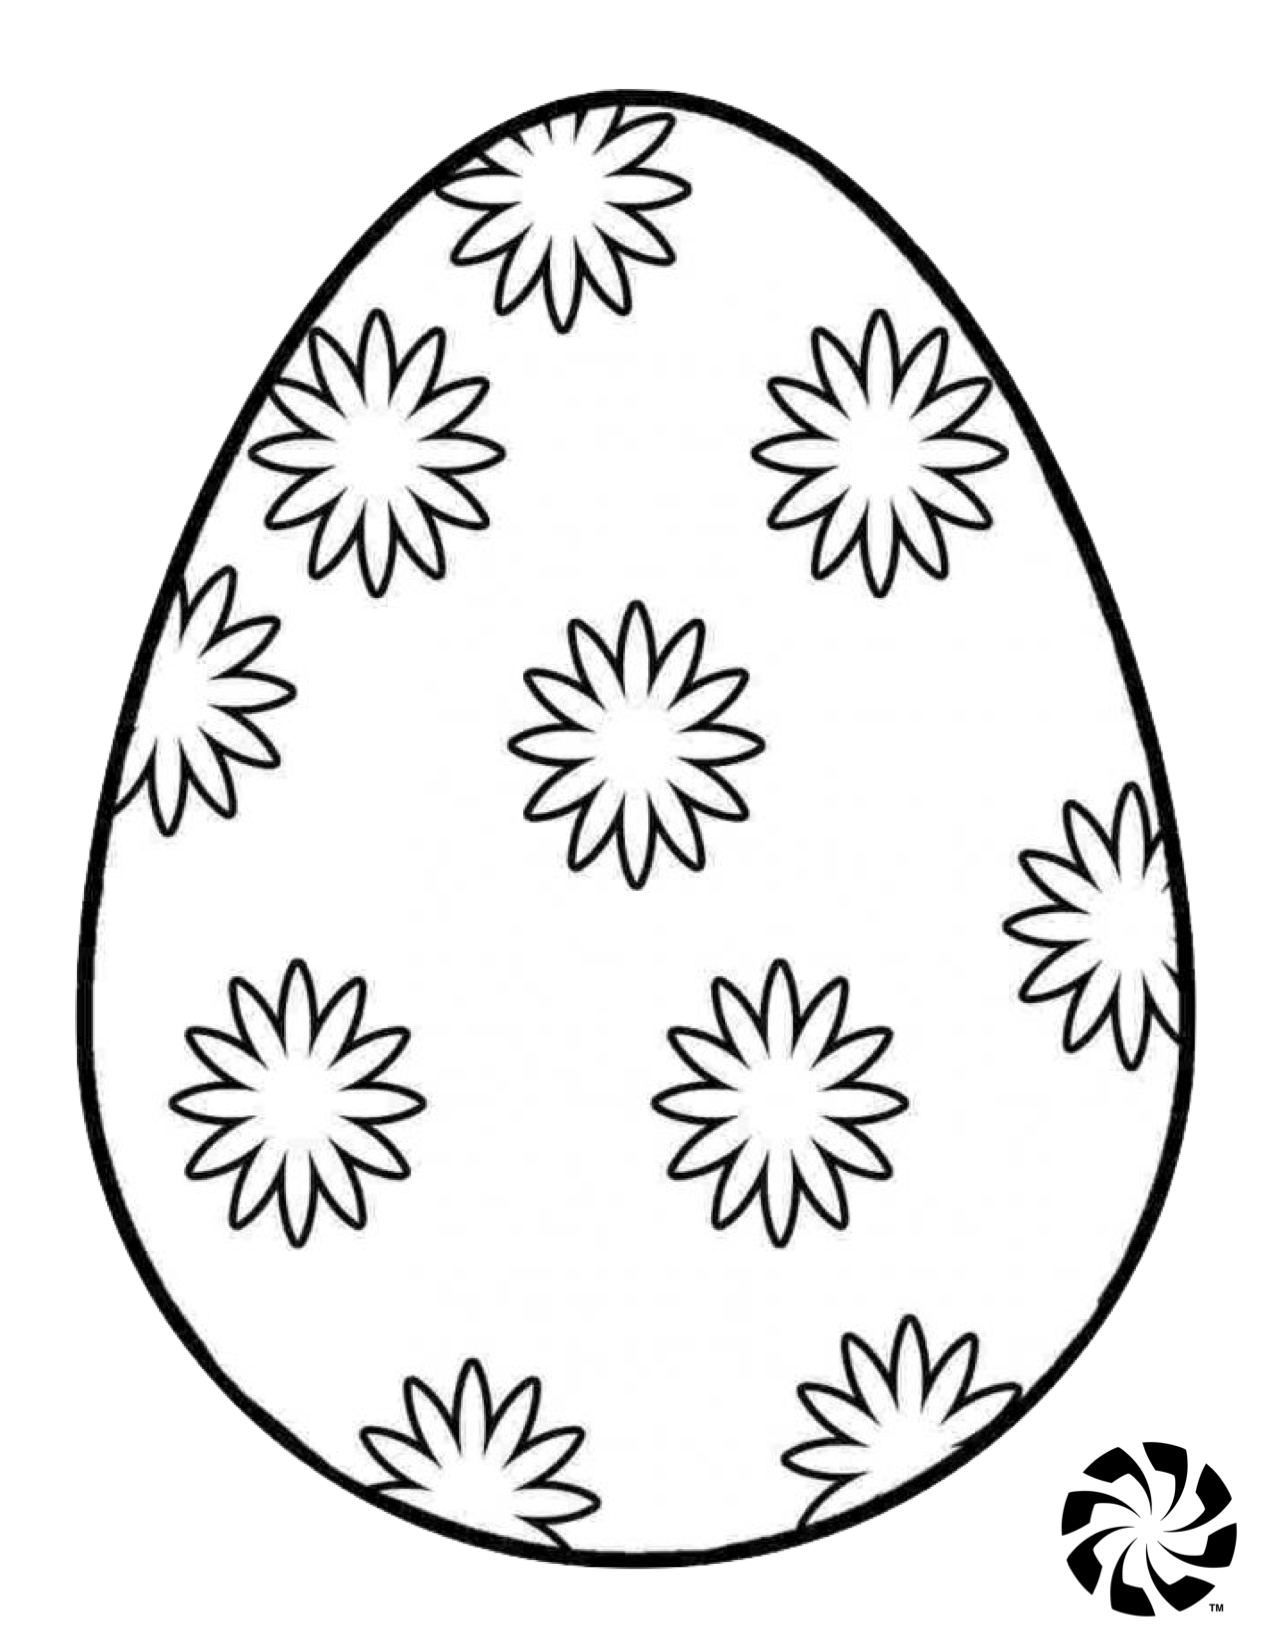 Распечатать раскраску яйца. Пасхальное яйцо раскраска. Яйцо раскраска для детей. Пасхальное яйцо раскраска для детей. Трафареты пасхальных яиц для раскрашивания.